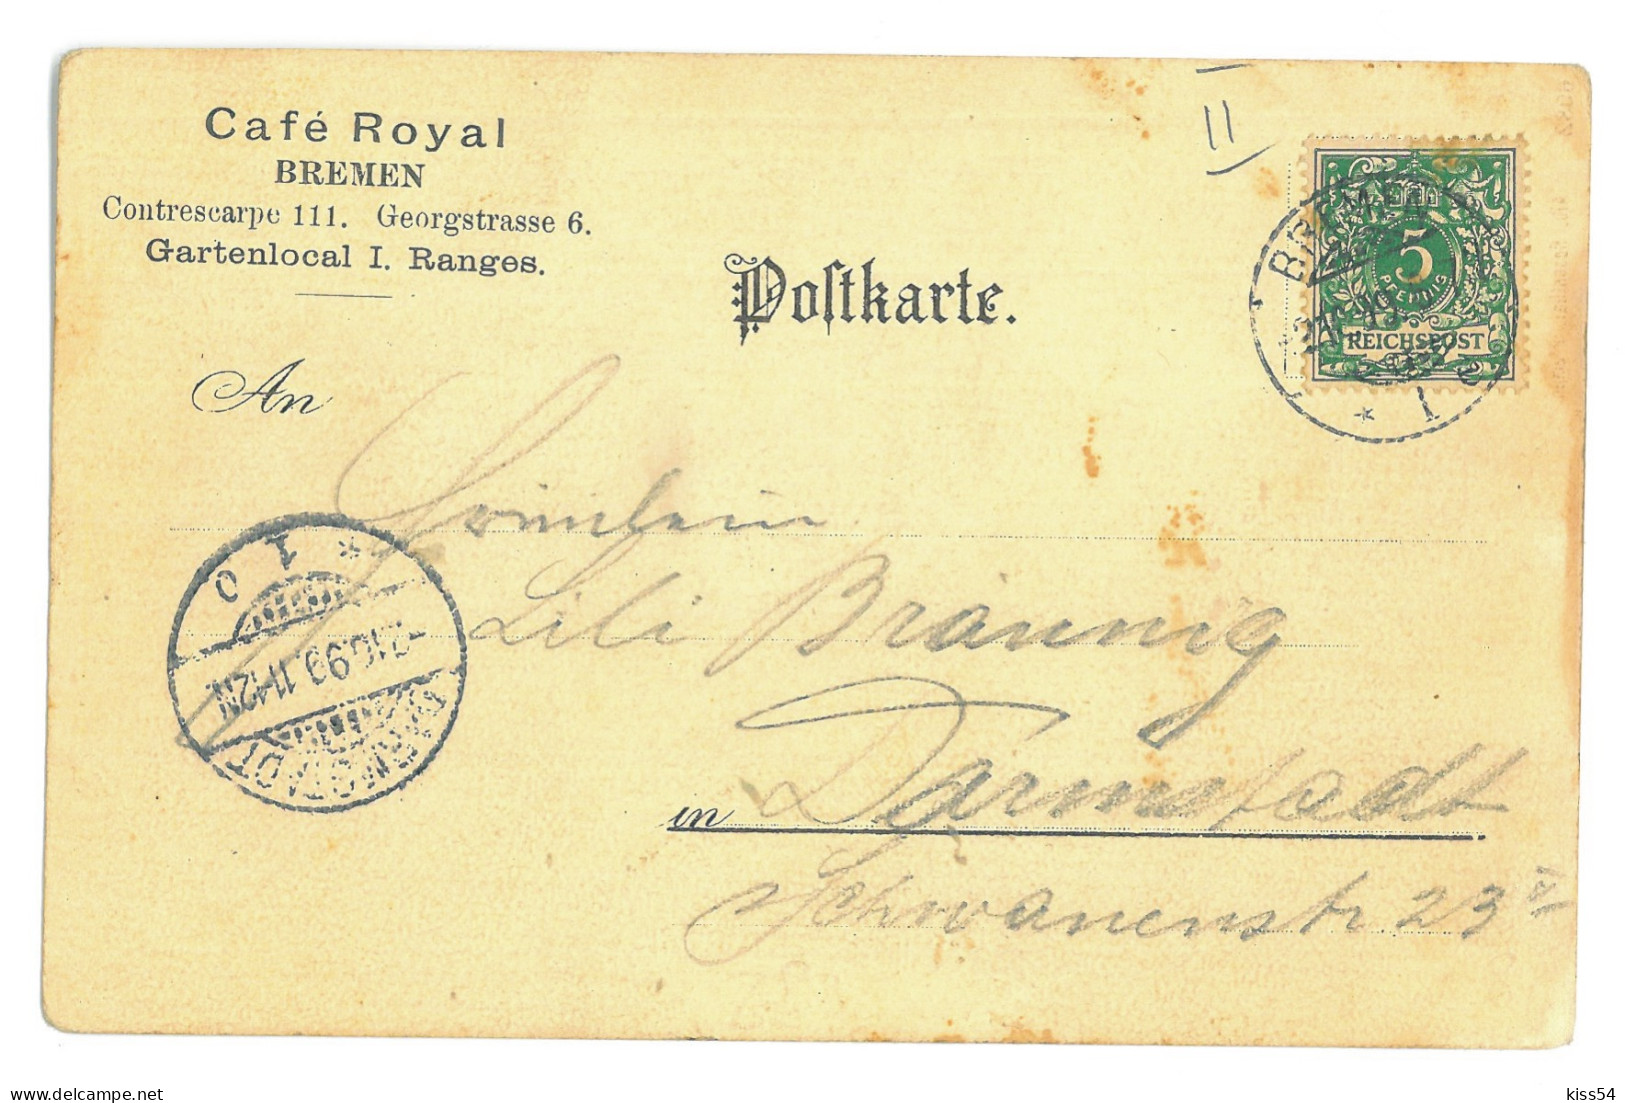 GER 18 - 16882 BREMEN, Litho, Germany - Old Postcard - Used - 1899 - Bremen